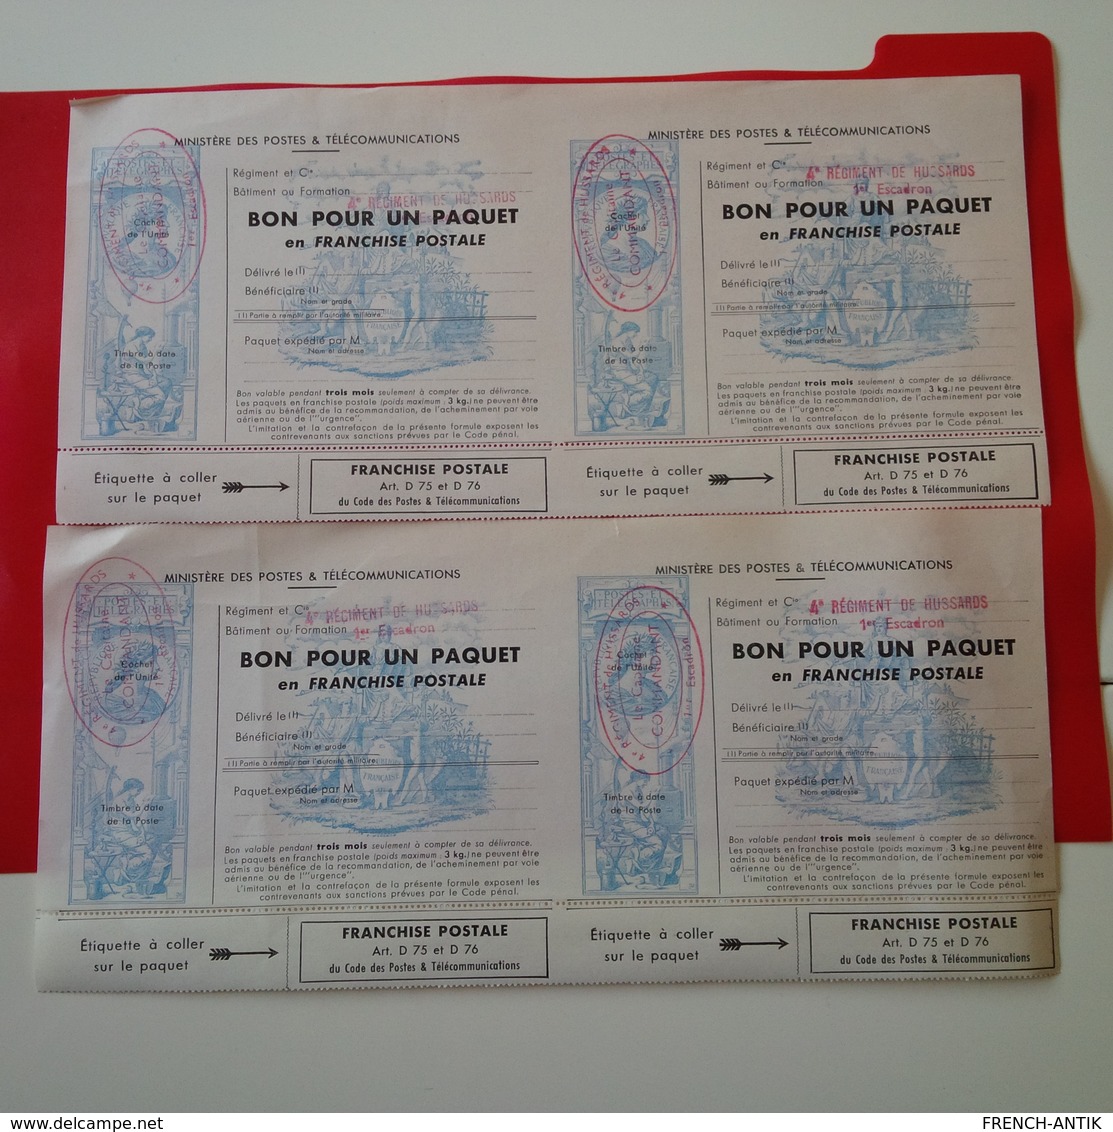 4 BON POUR UN PAQUET EN FRANCHISE POSTALE CACHET 4E REGIMENT DE HUSSARDS 1ER ESCADRON LE CAPITAINE - Military Postage Stamps